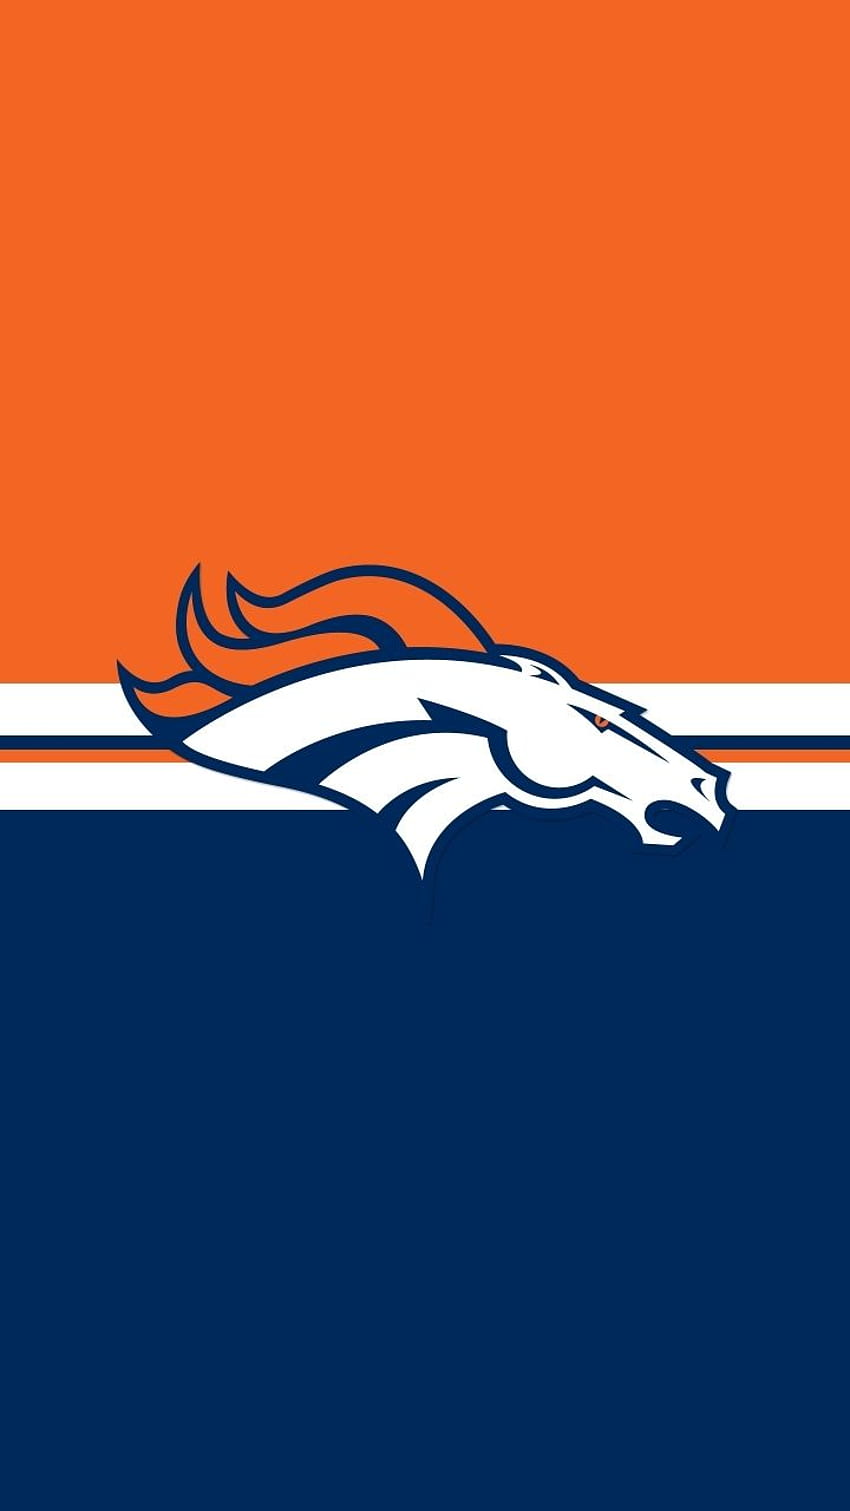 Neues Denver Broncos-Handy FULL 1920×1080 für PC-Hintergrund im Jahr 2020. Broncos, Denver-Broncos, Oakland-Raider, Coole Broncos HD-Handy-Hintergrundbild